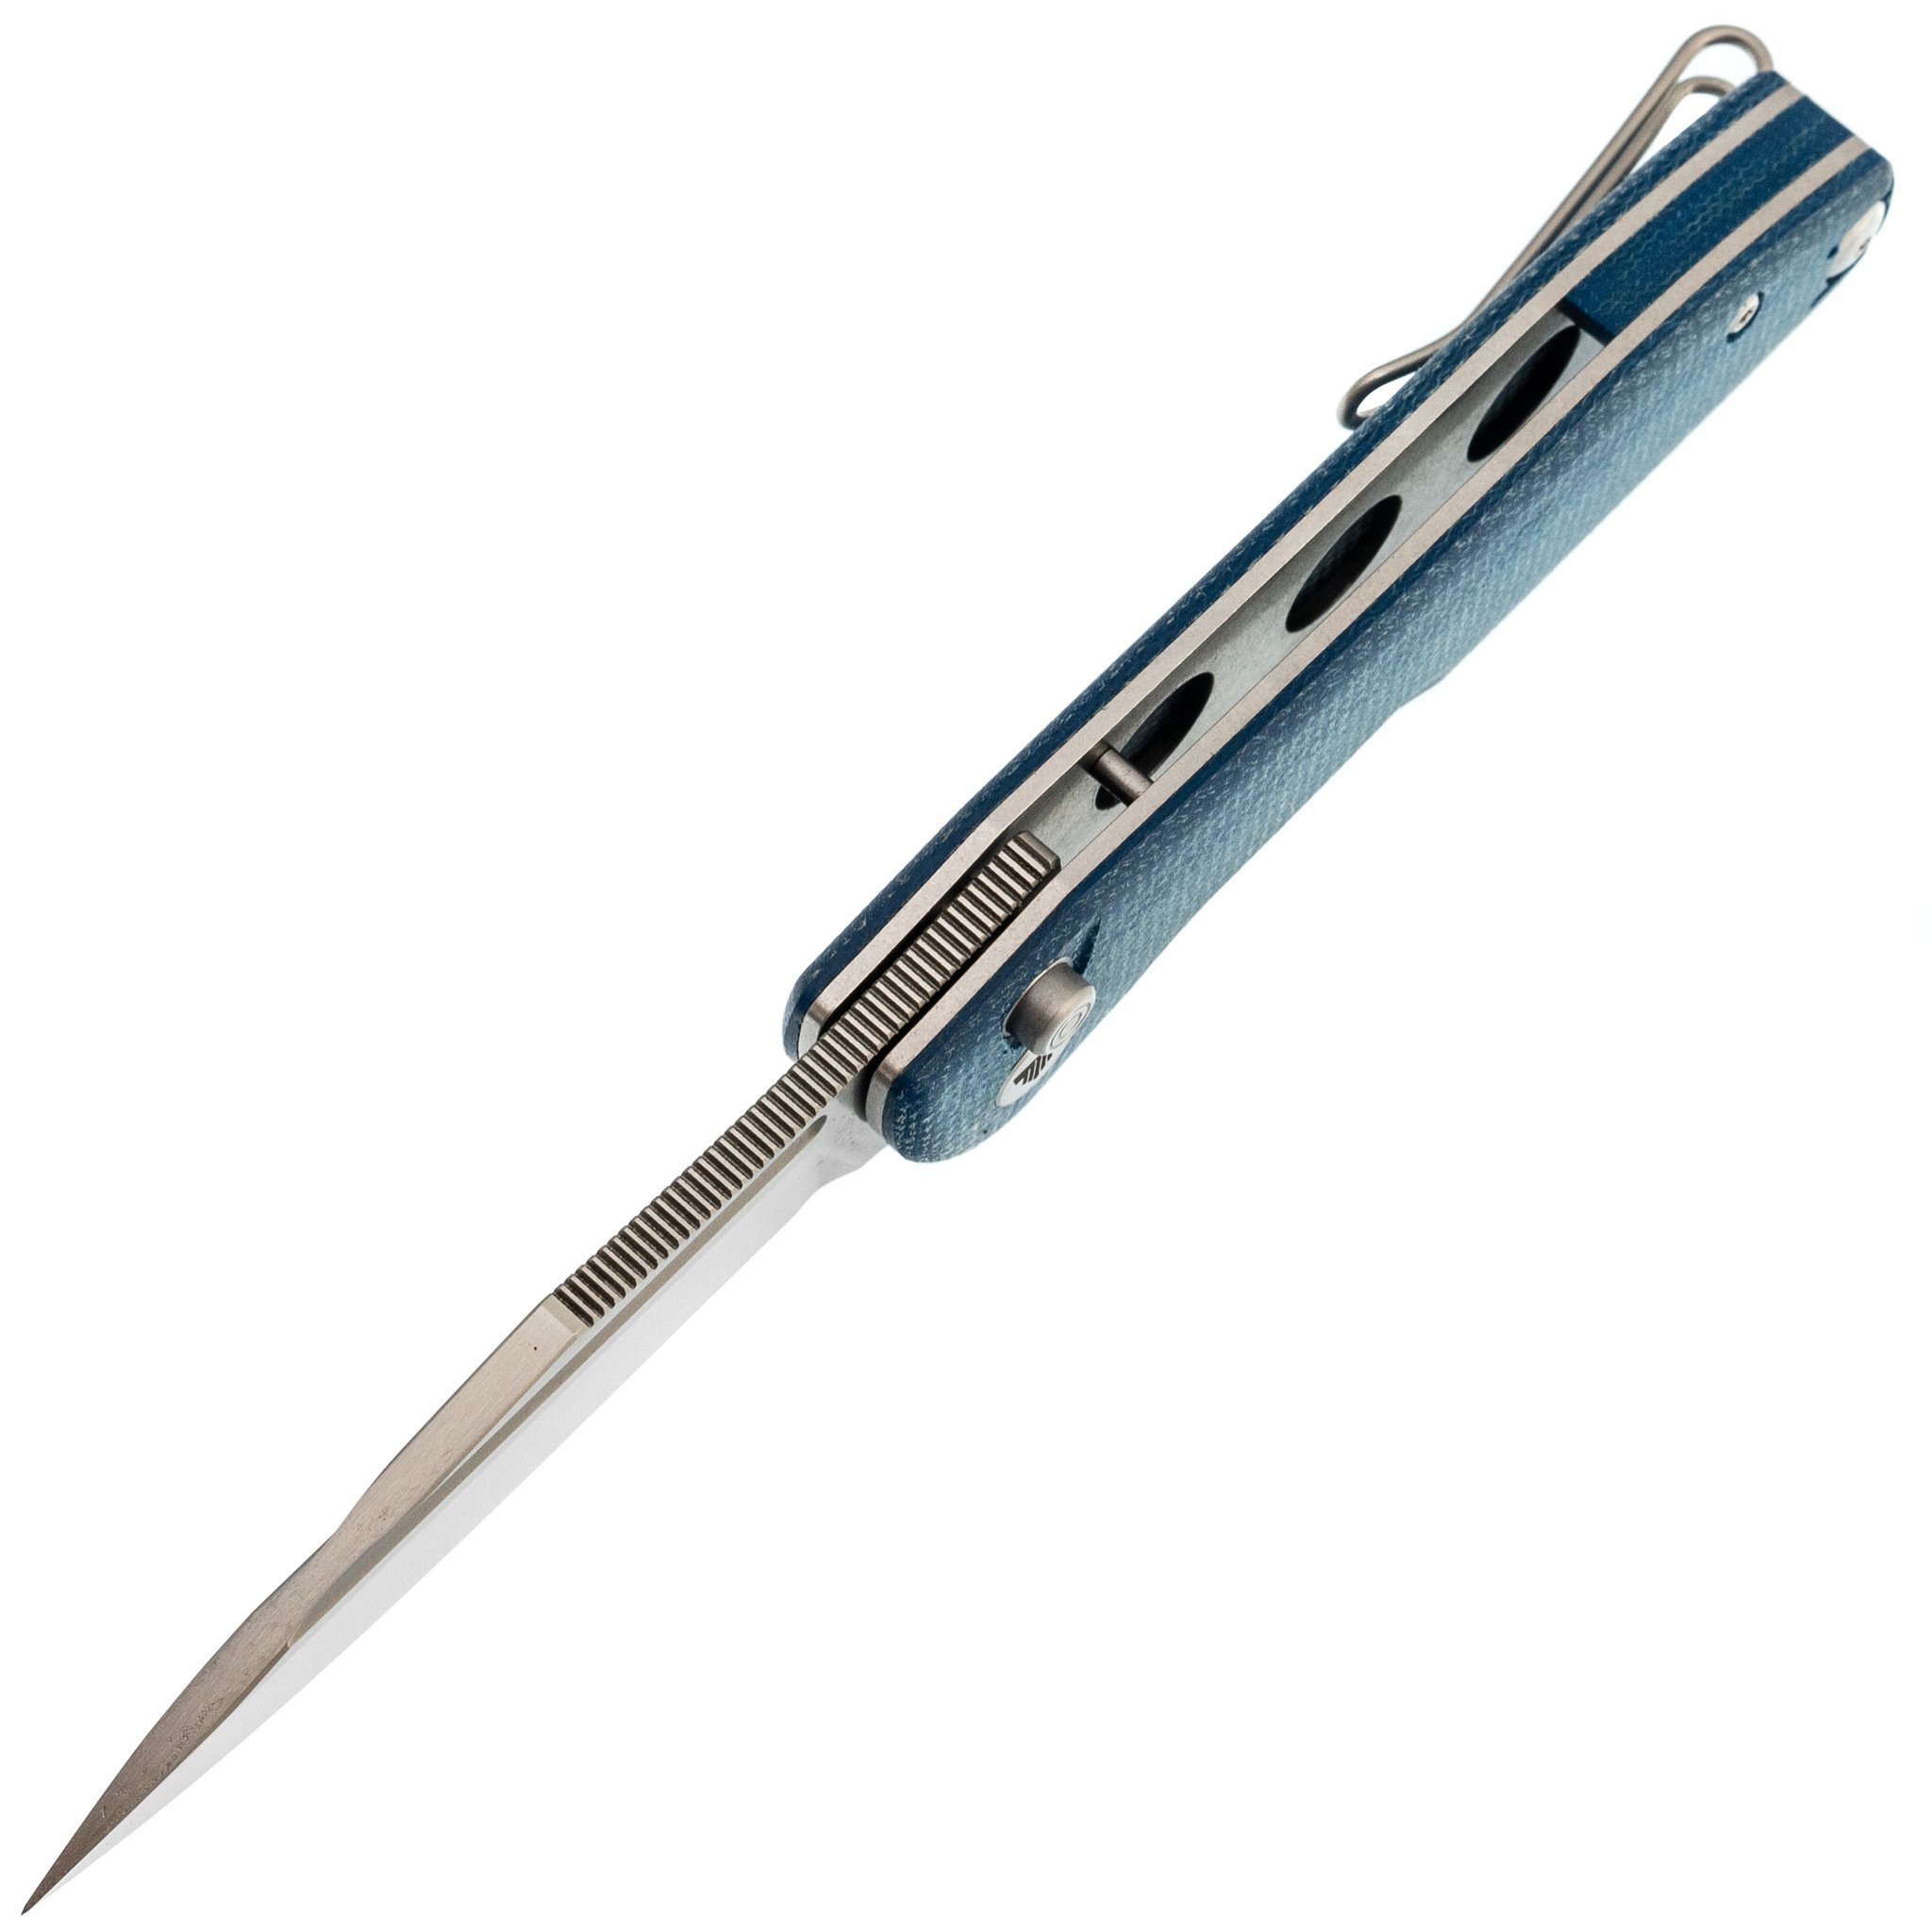 Складной нож Trivisa Antliae-04LMW, сталь 14C28N, рукоять микарта, синий - фото 2